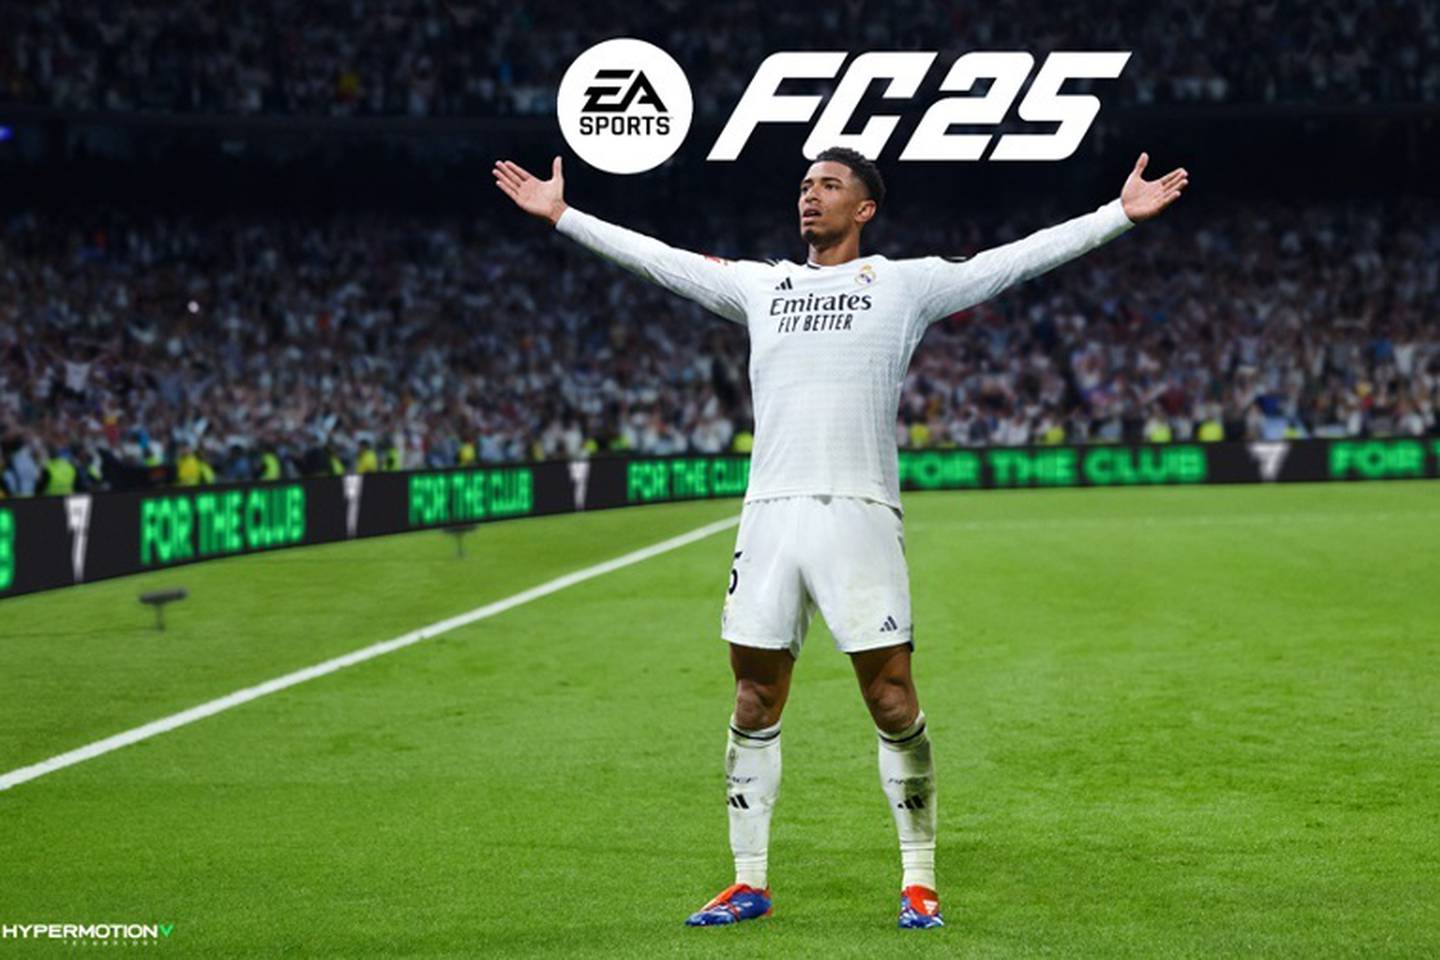 Electronic Arts anunció que Jude Bellingham será la portada de EA SPORTS FC 25, con lanzamiento mundial a finales de año.